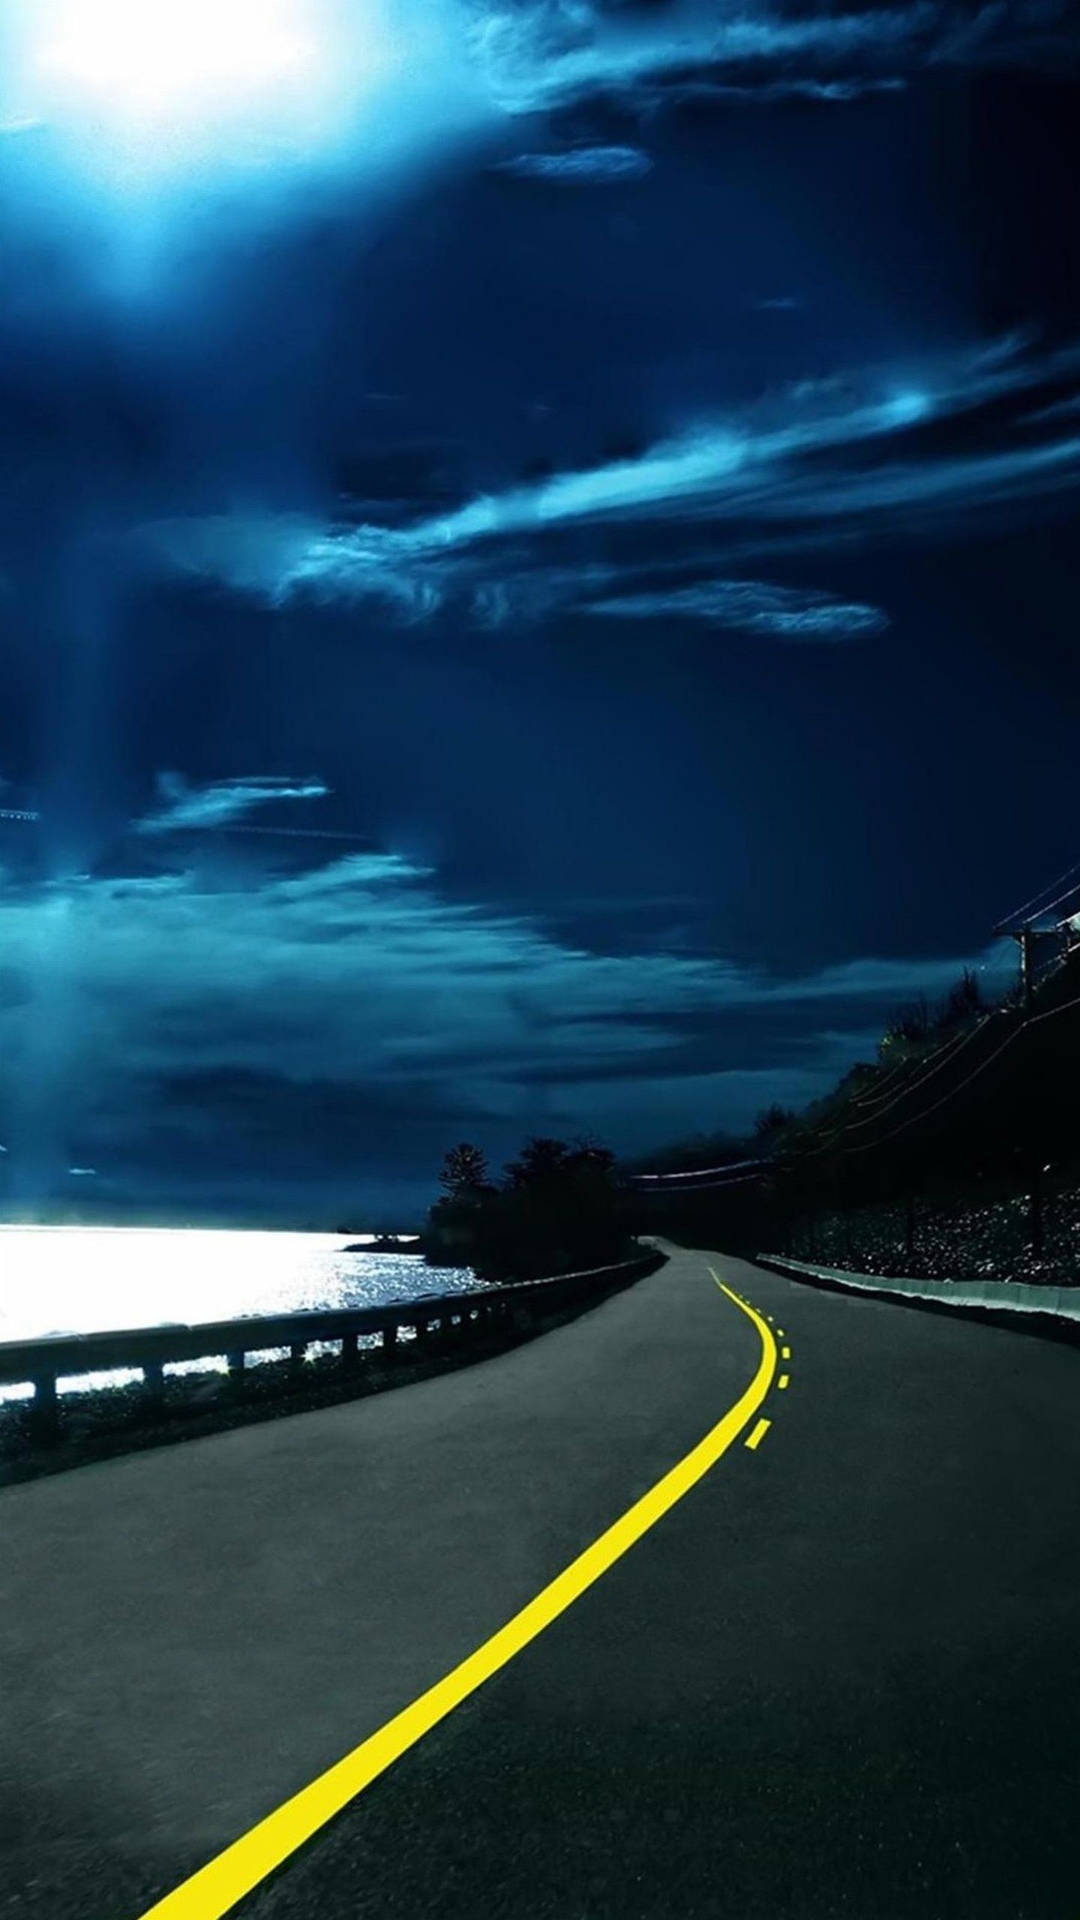 Qhd Coastal Road At Night